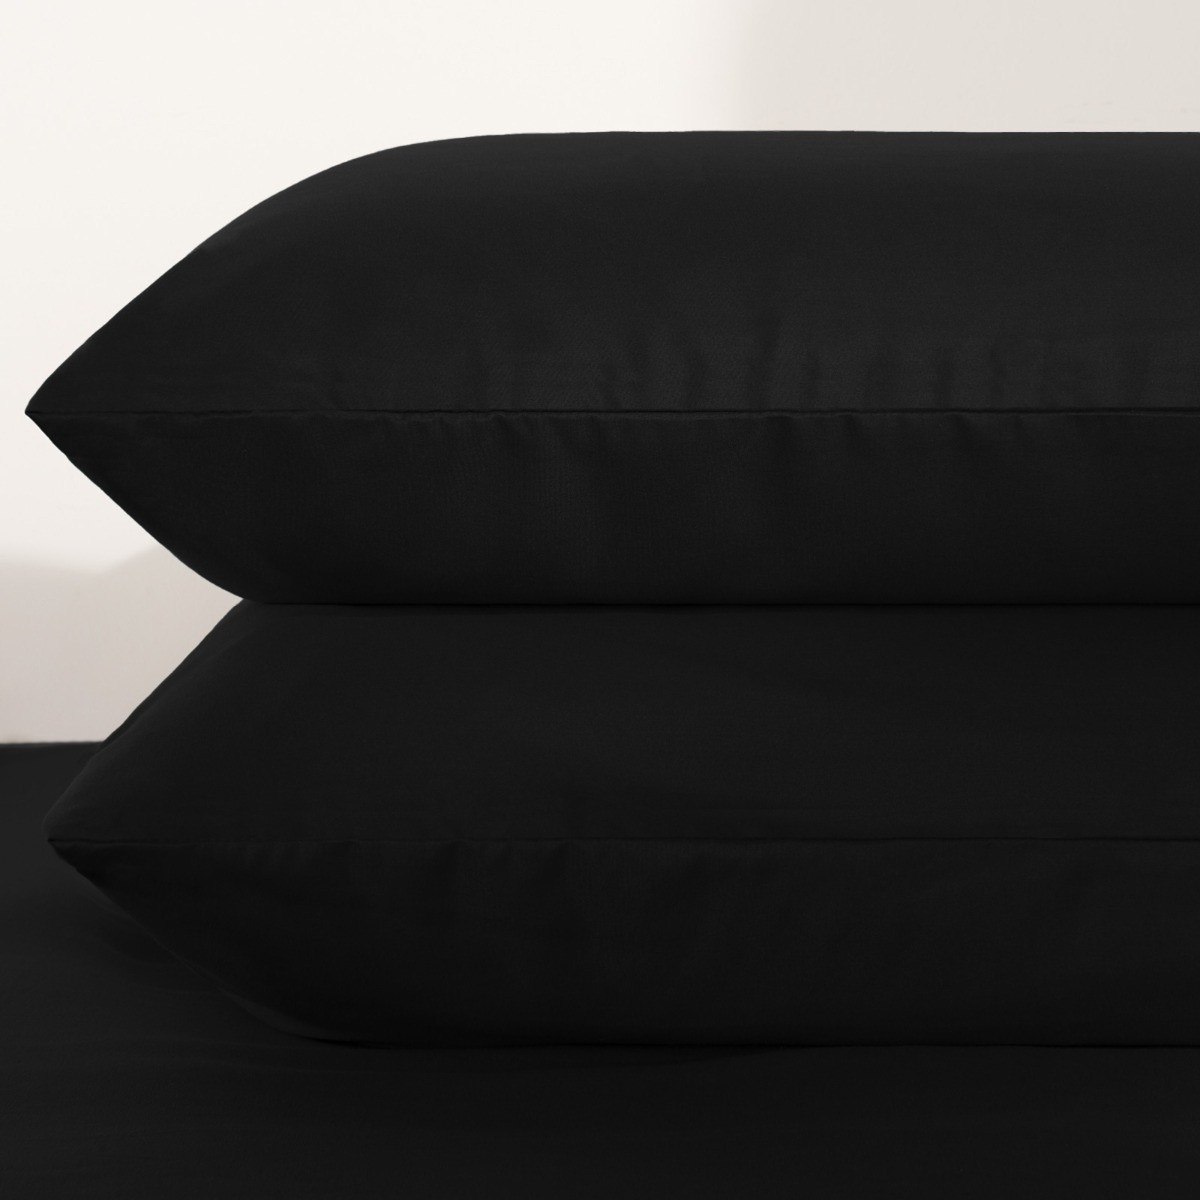 Brentfords Plain Duvet Cover Quilt with Pillowcases - Black, King>